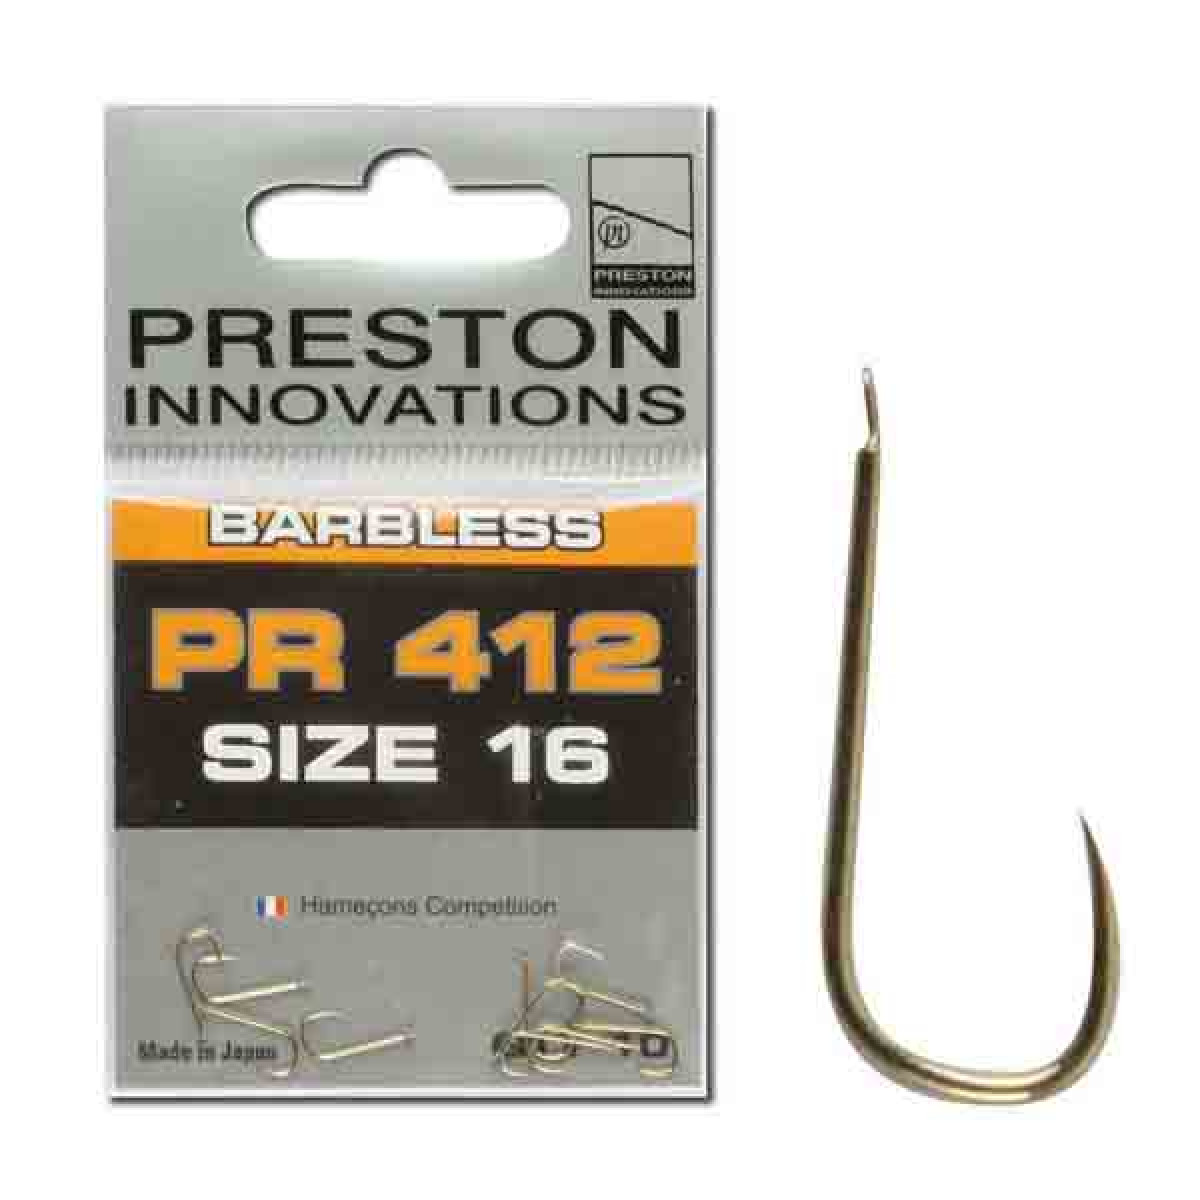 PRESTON PR-412